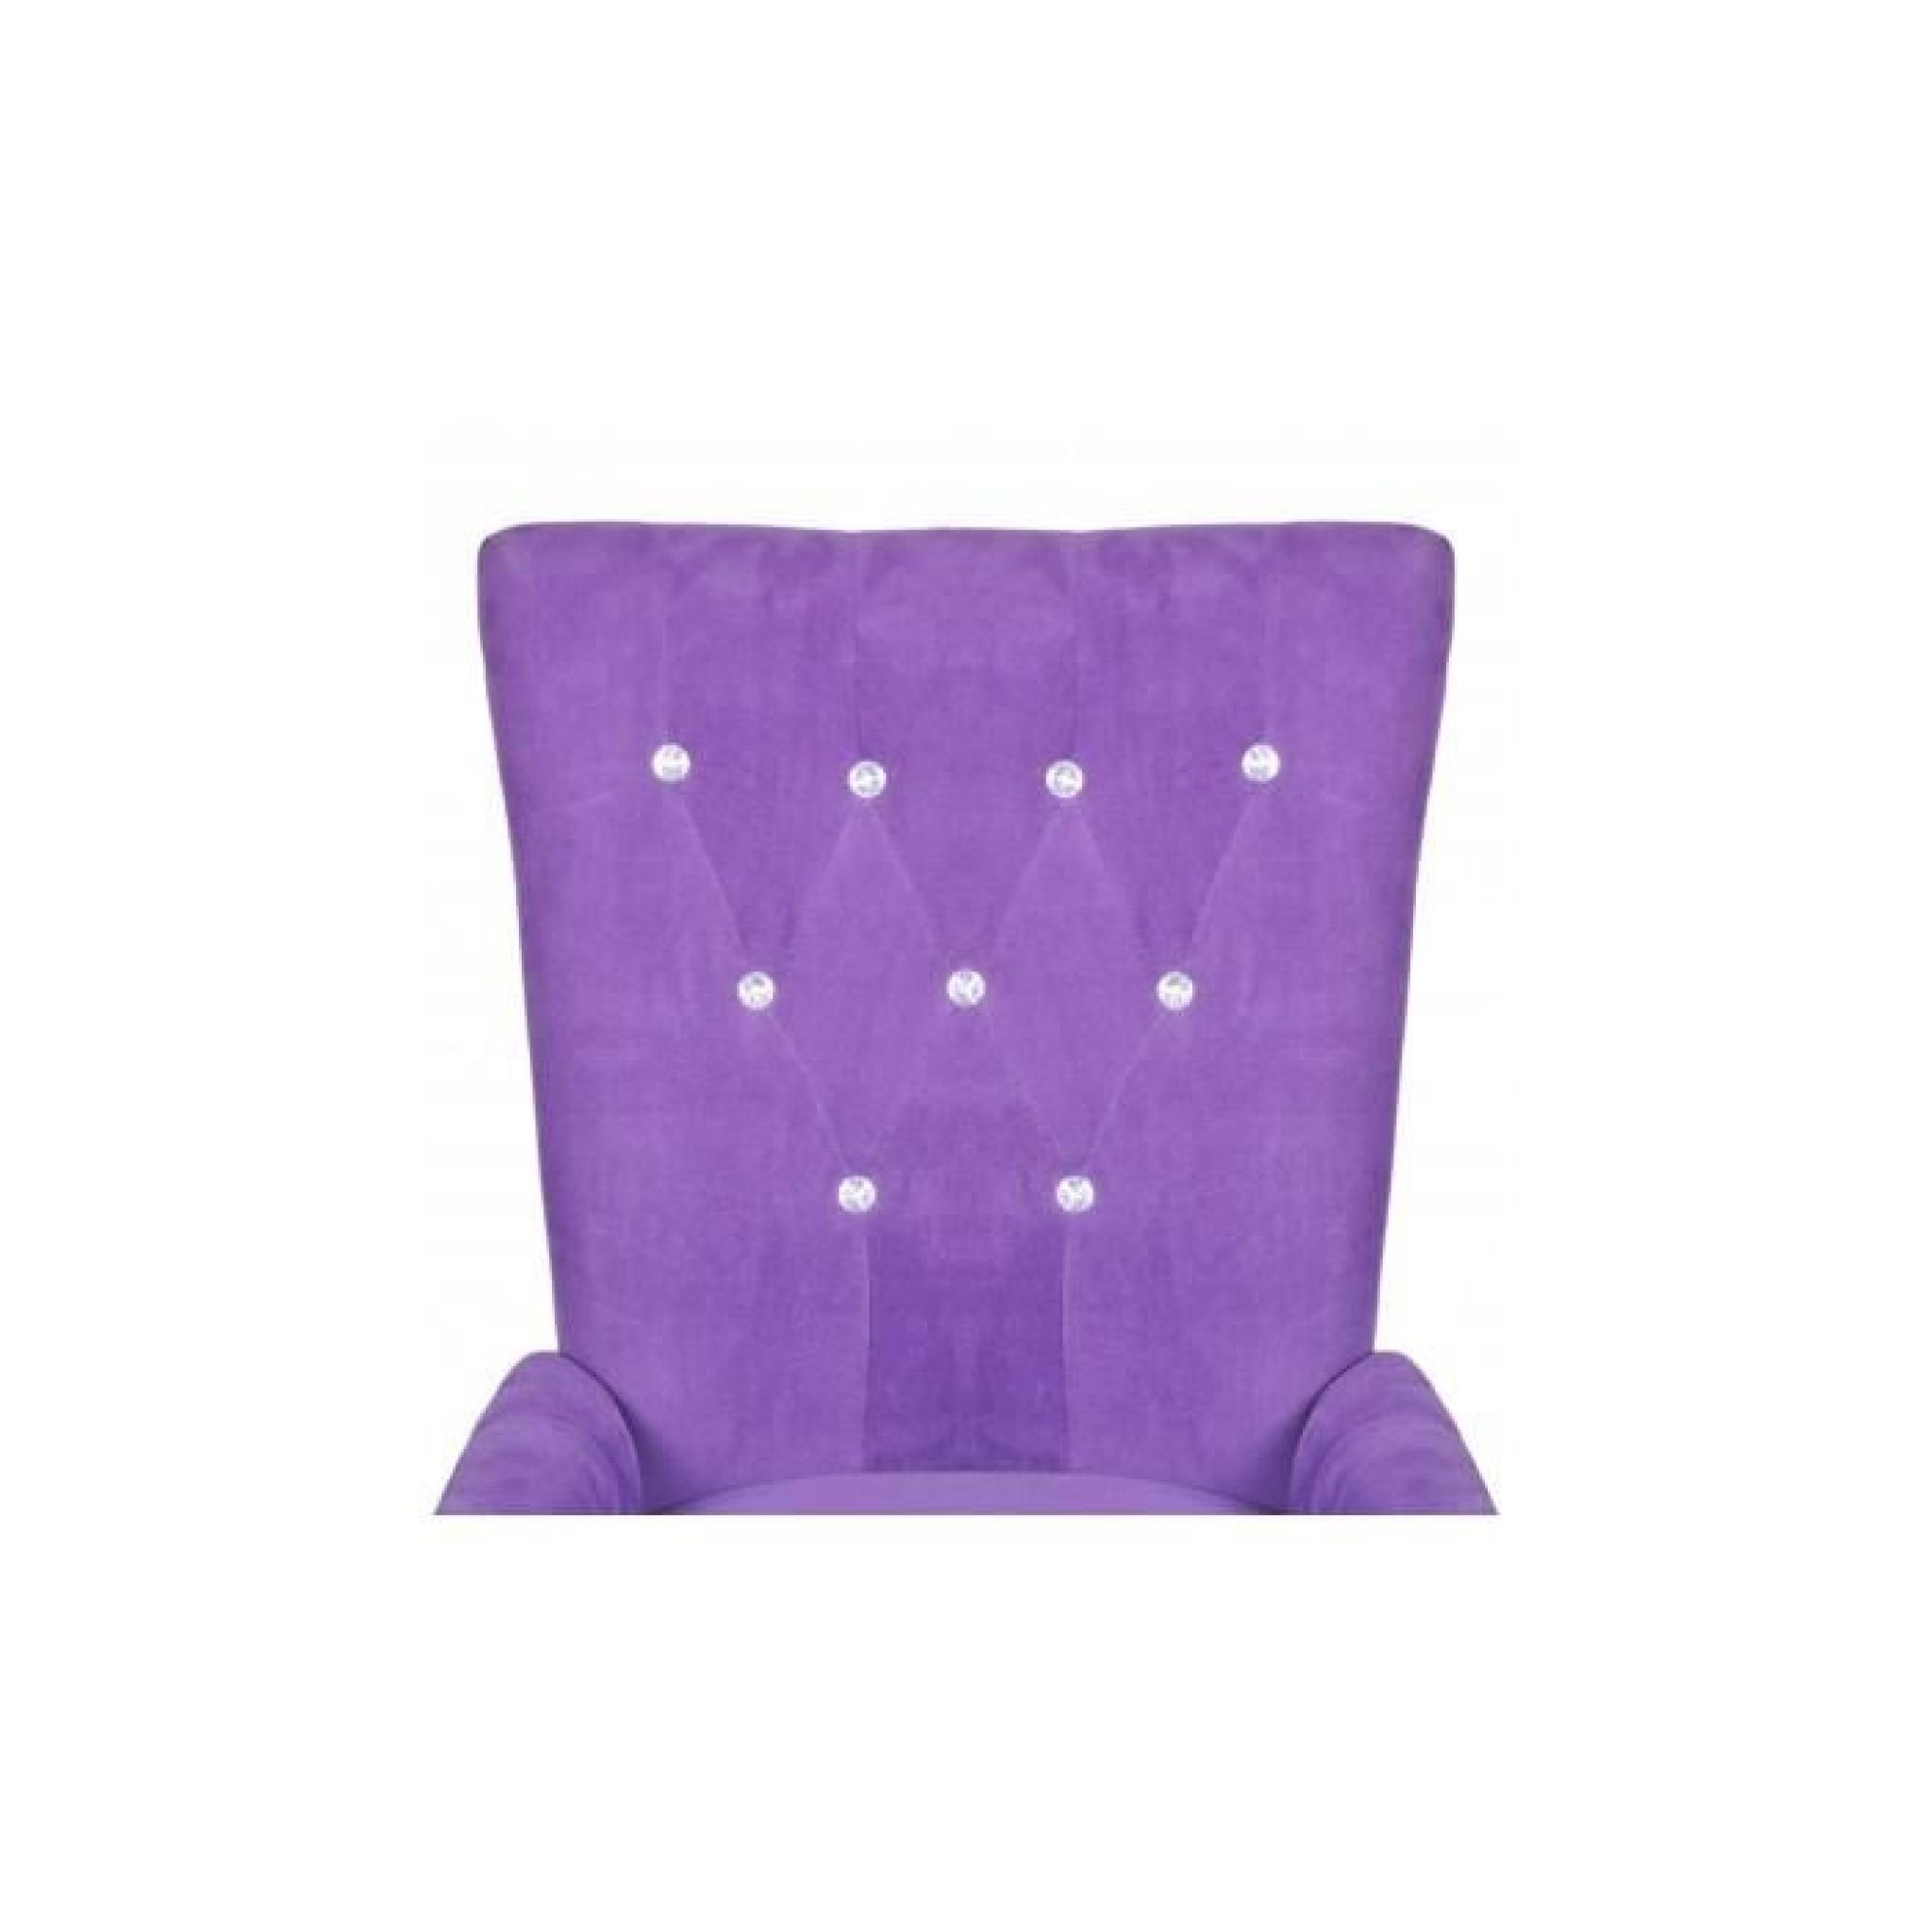 Chaise capitonnée velours violet 54 x 56 x 106 cm pas cher